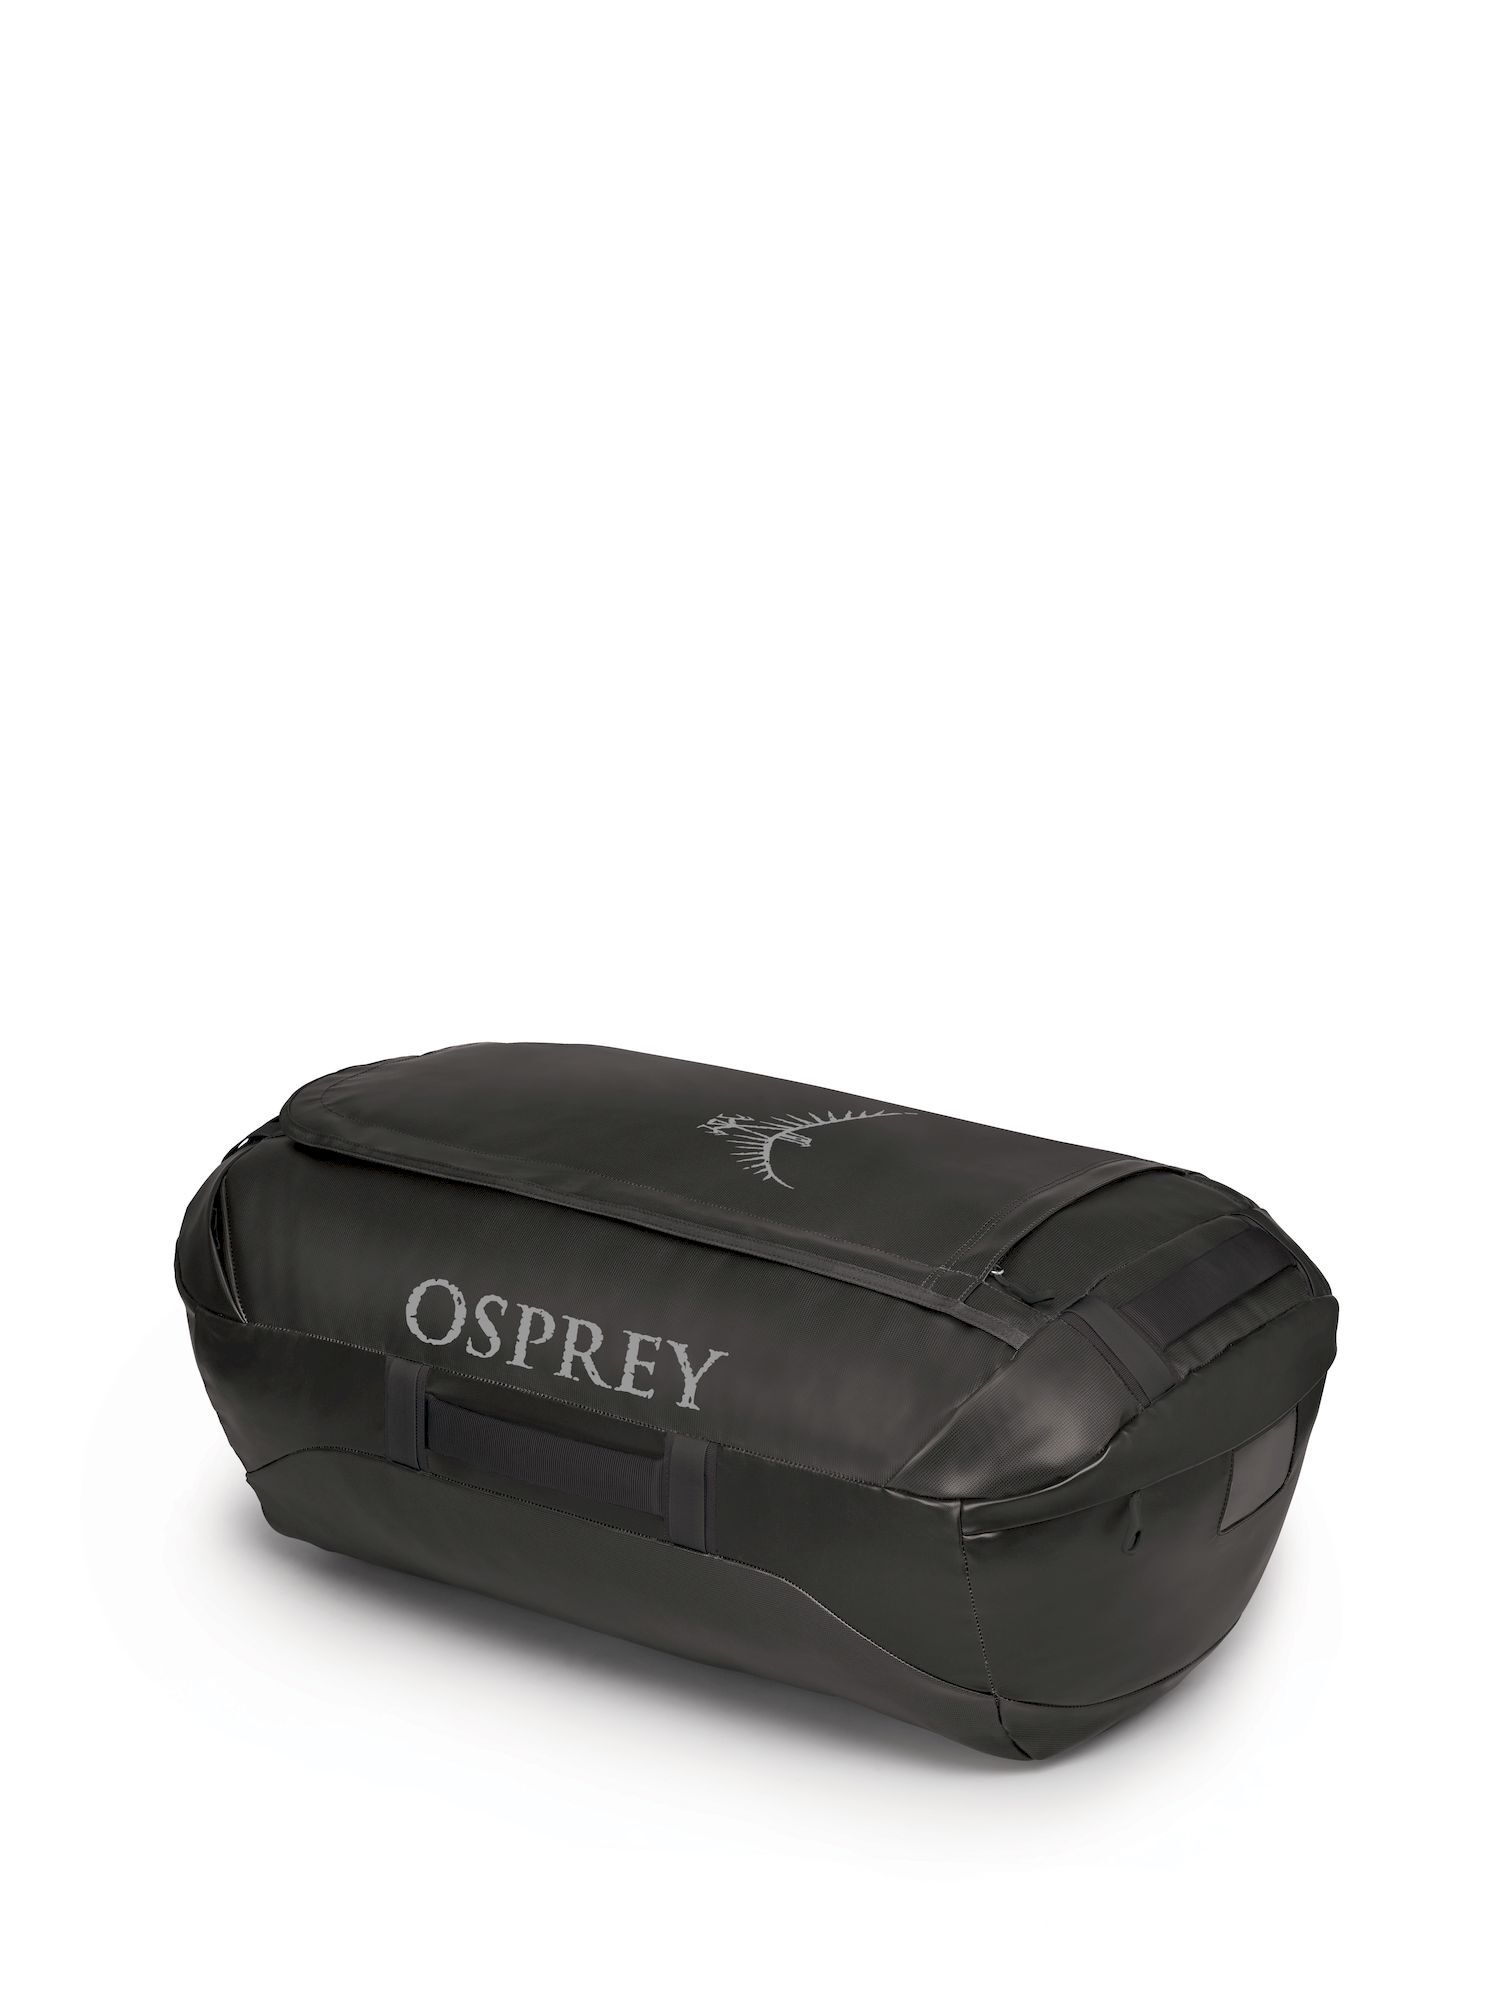 Osprey - Transporter 95 - Bolsa de viaje